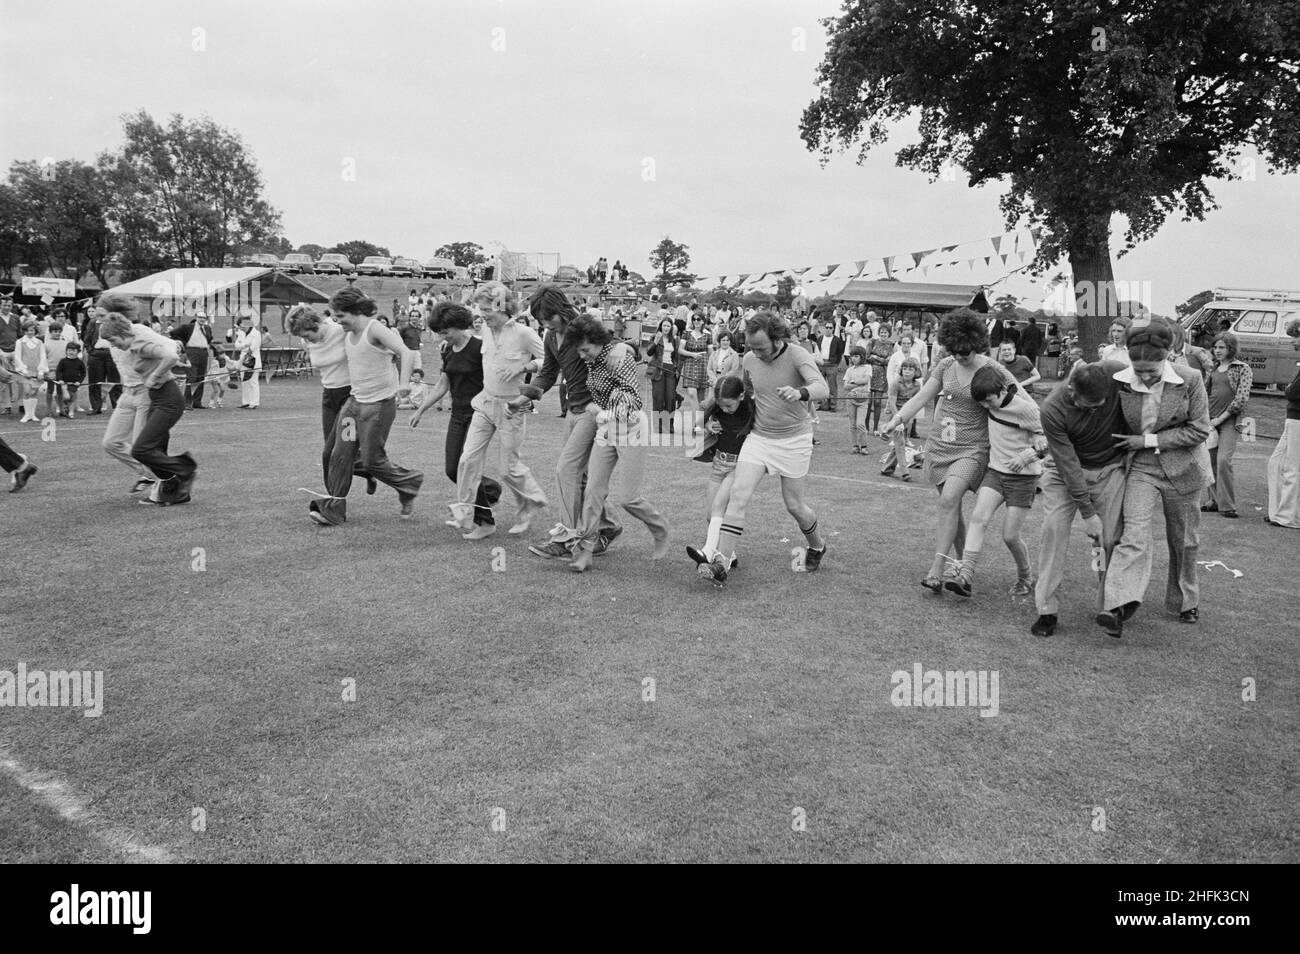 Laing Sports Ground, Rowley Lane, Elstree, Barnet, Londra, 09/06/1973. Persone che gareggiano in una gara a tre zampe durante l'annuale Gala Day che si tiene presso il Laing Sports Ground di Elstree. La Giornata annuale di Gala si è tenuta presso il Laing Sports Ground il 9th giugno 1973. Le attrazioni includono dimostrazioni di cani di polizia, velivoli modello, la Royal British Legion band, corse per bambini e sport. La sera c'erano balli e bingo nella Club House, e "birra e picchiata" nel tendone. Oltre 2.000 persone hanno partecipato al gala e più di 600 persone sono rimaste per l'intrattenimento serale. Foto Stock